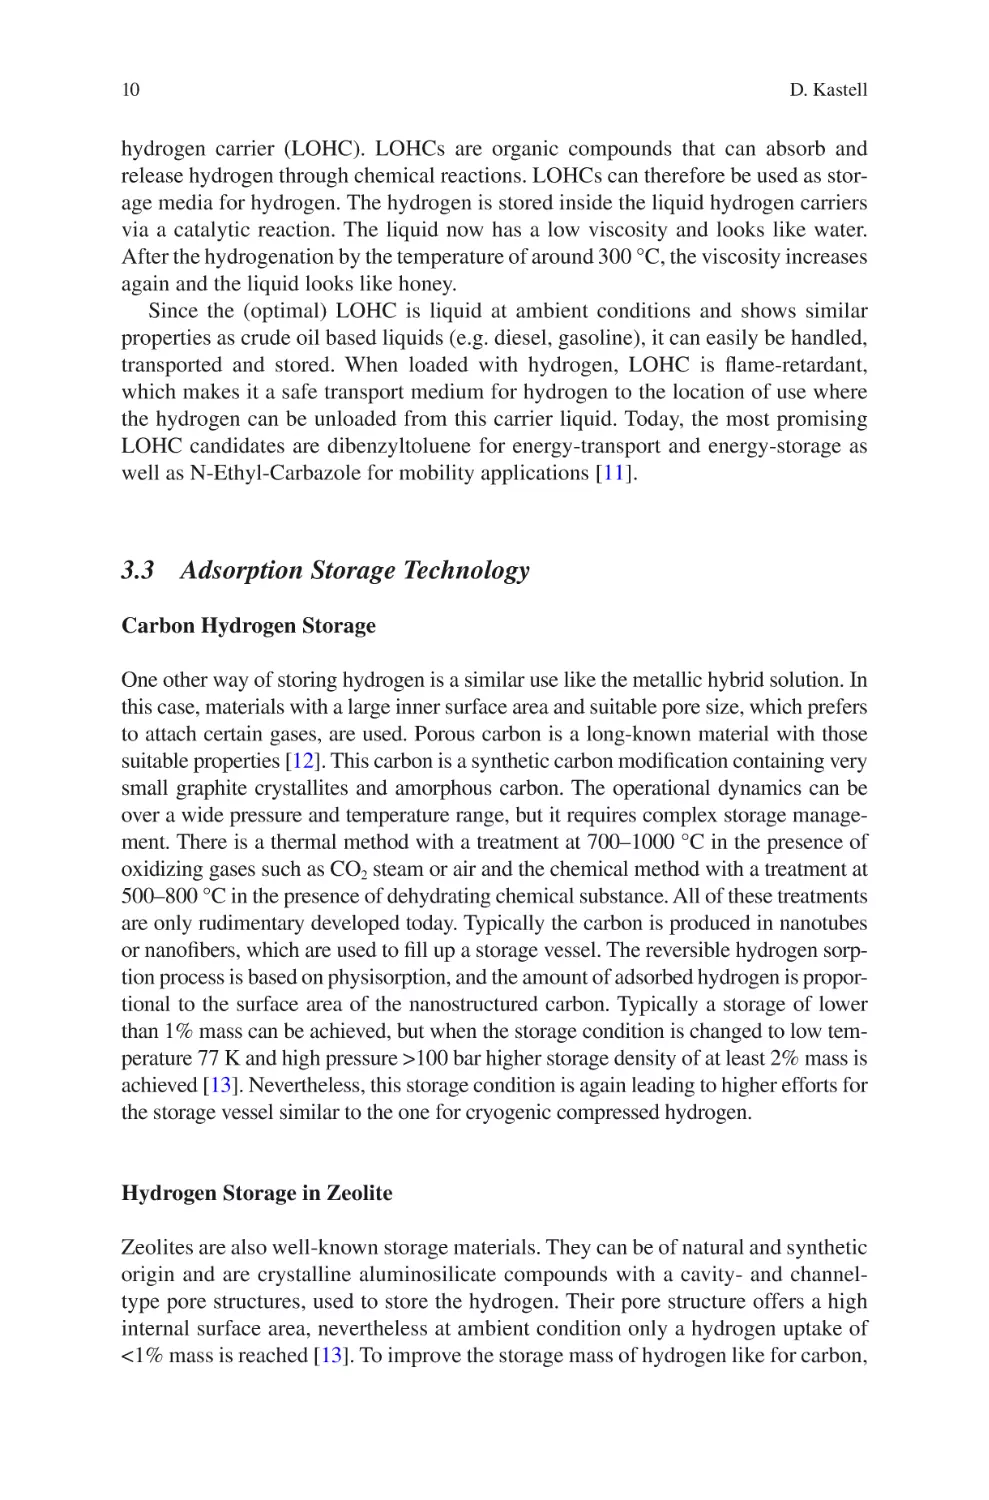 3.3 Adsorption Storage Technology
Carbon Hydrogen Storage
Hydrogen Storage in Zeolite